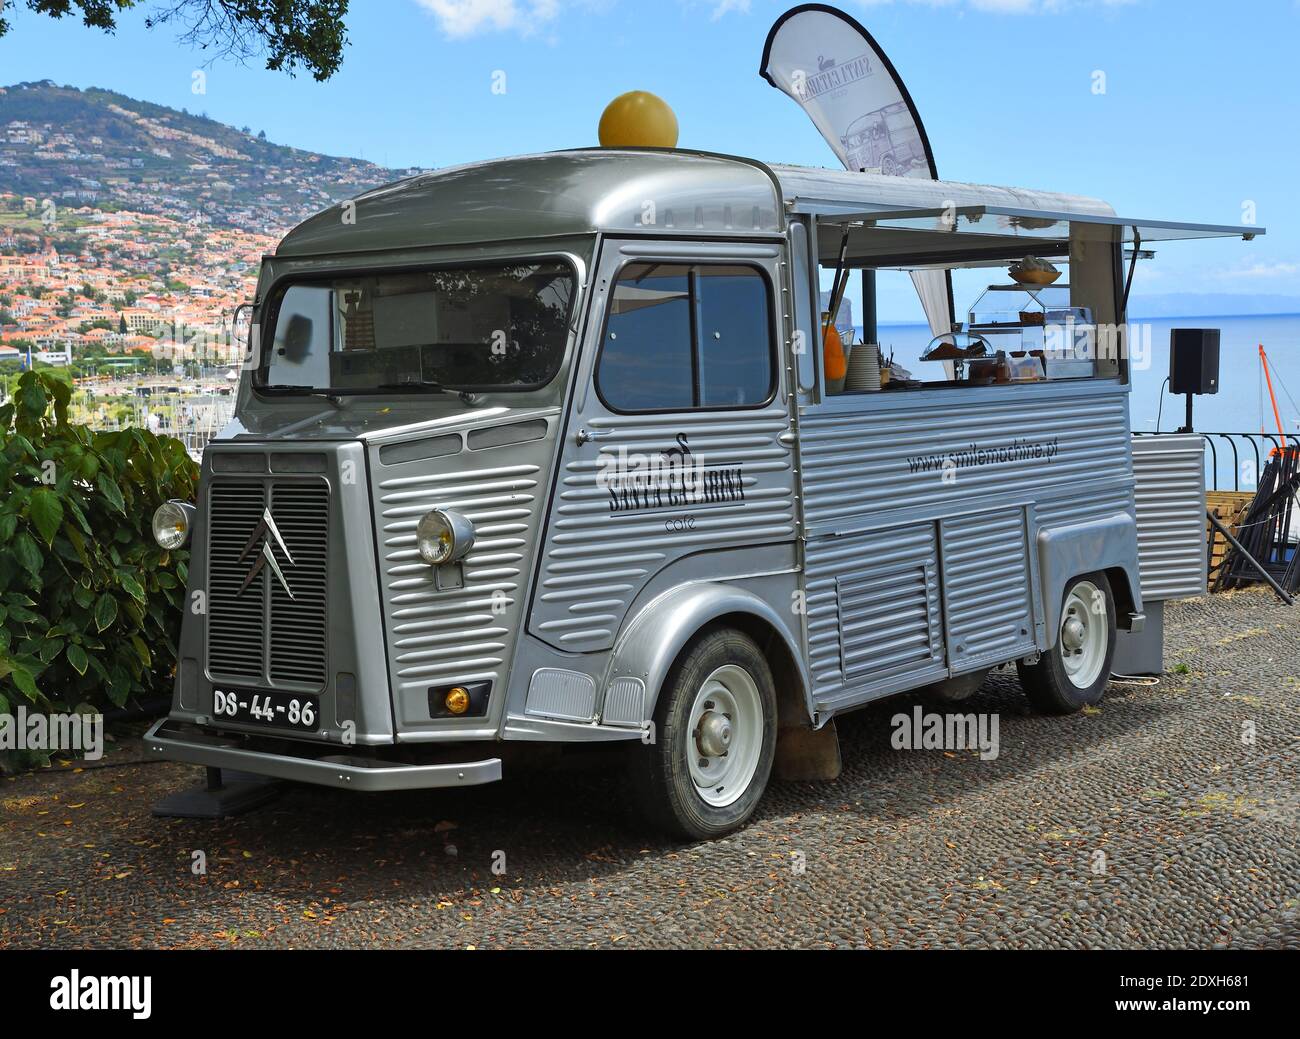 La camionnette Citroën classique est utilisée comme café dans le parc Funchal Madère. Banque D'Images